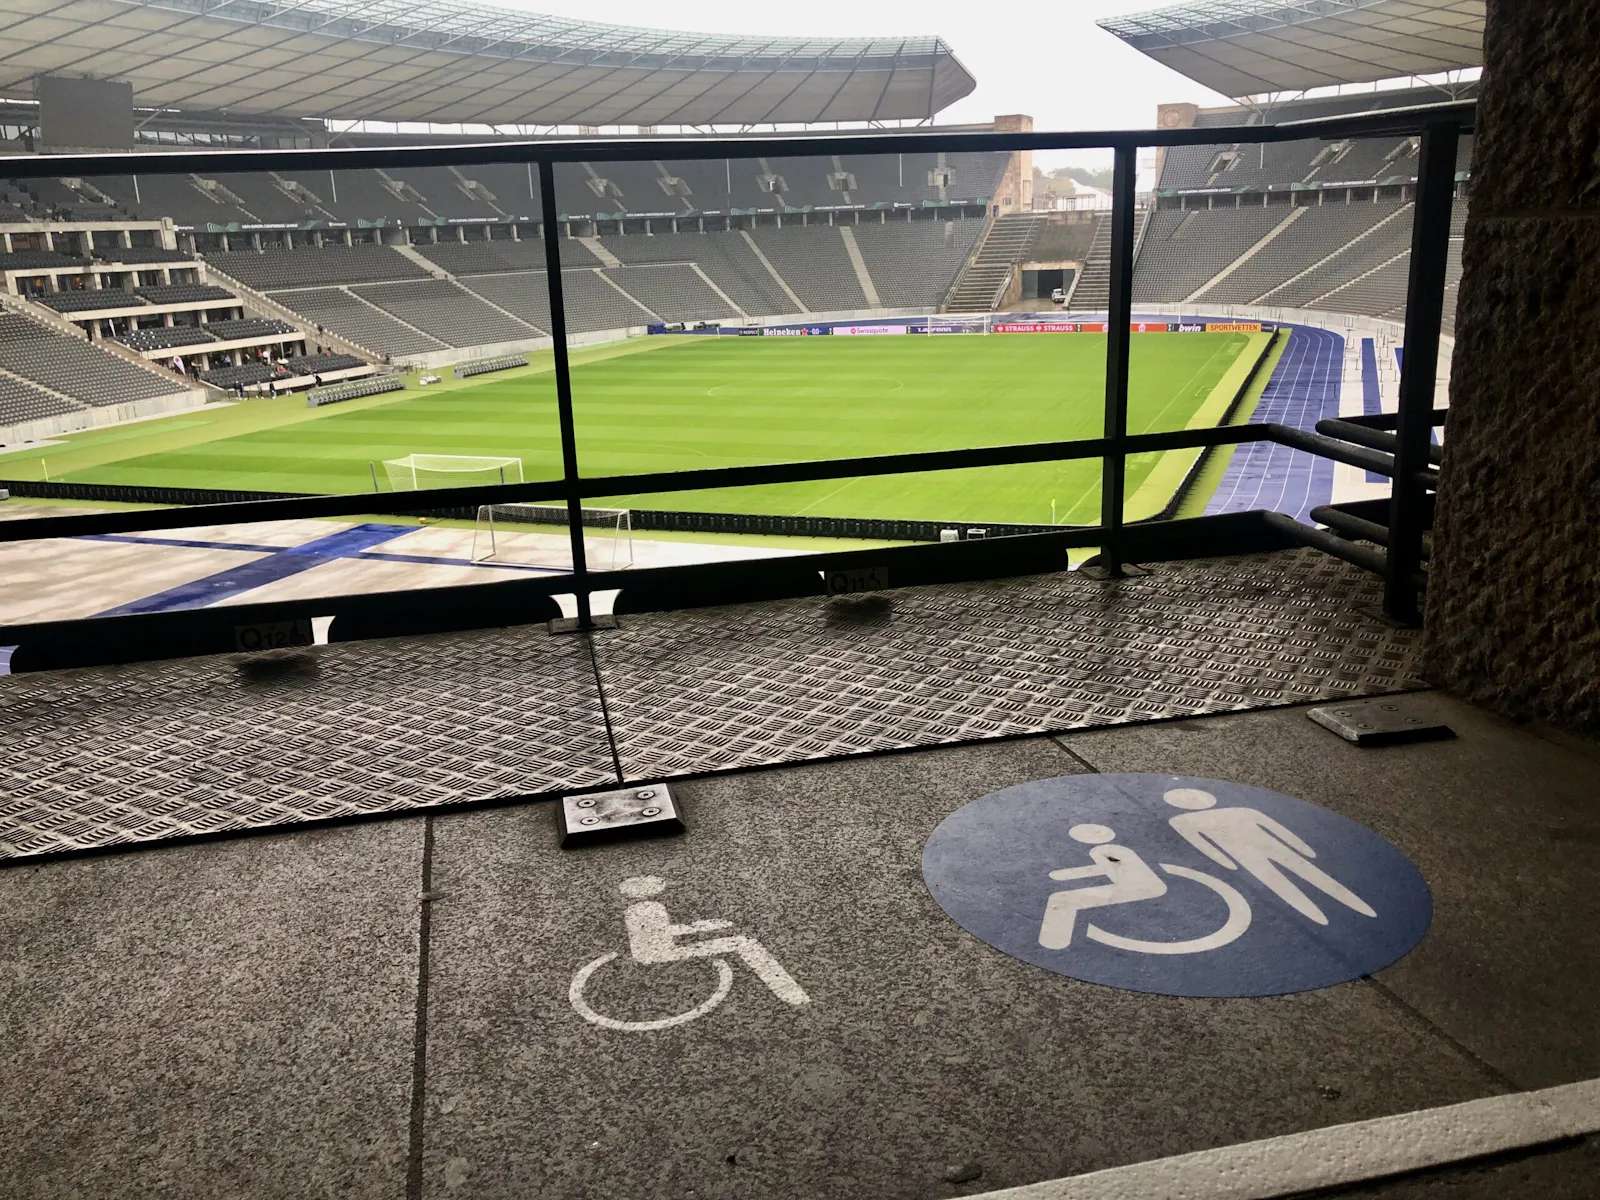 Blick ins Berliner Olympiastadion. Im Vordergrund sind Rollstuhlplätze zu sehen, die durch Piktogramme auf dem Boden klar gekennzeichnet sind.